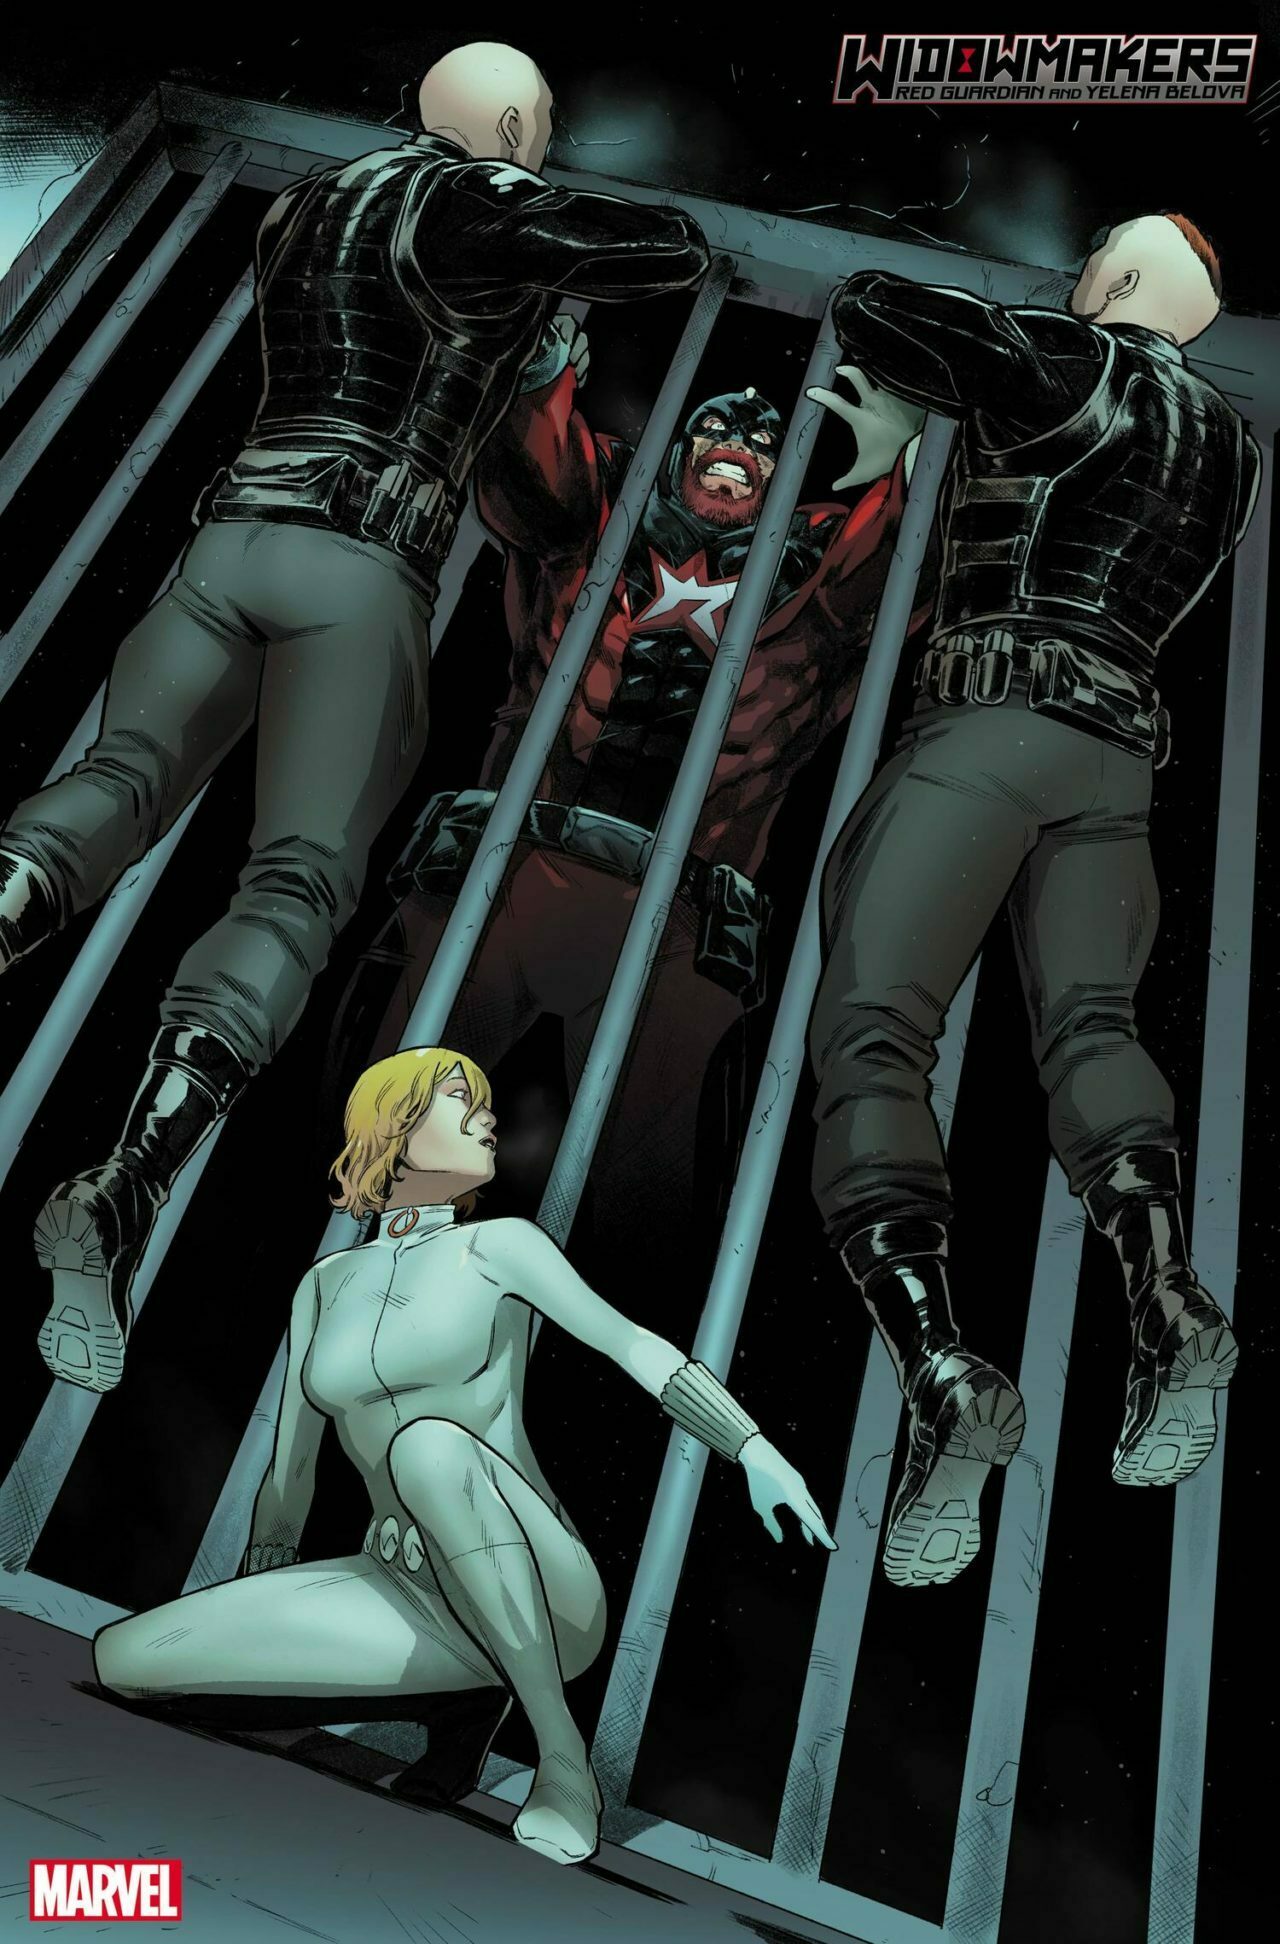 Marvel | Revelados detalhes do novo título de Guardião Vermelho e Yelena Belova